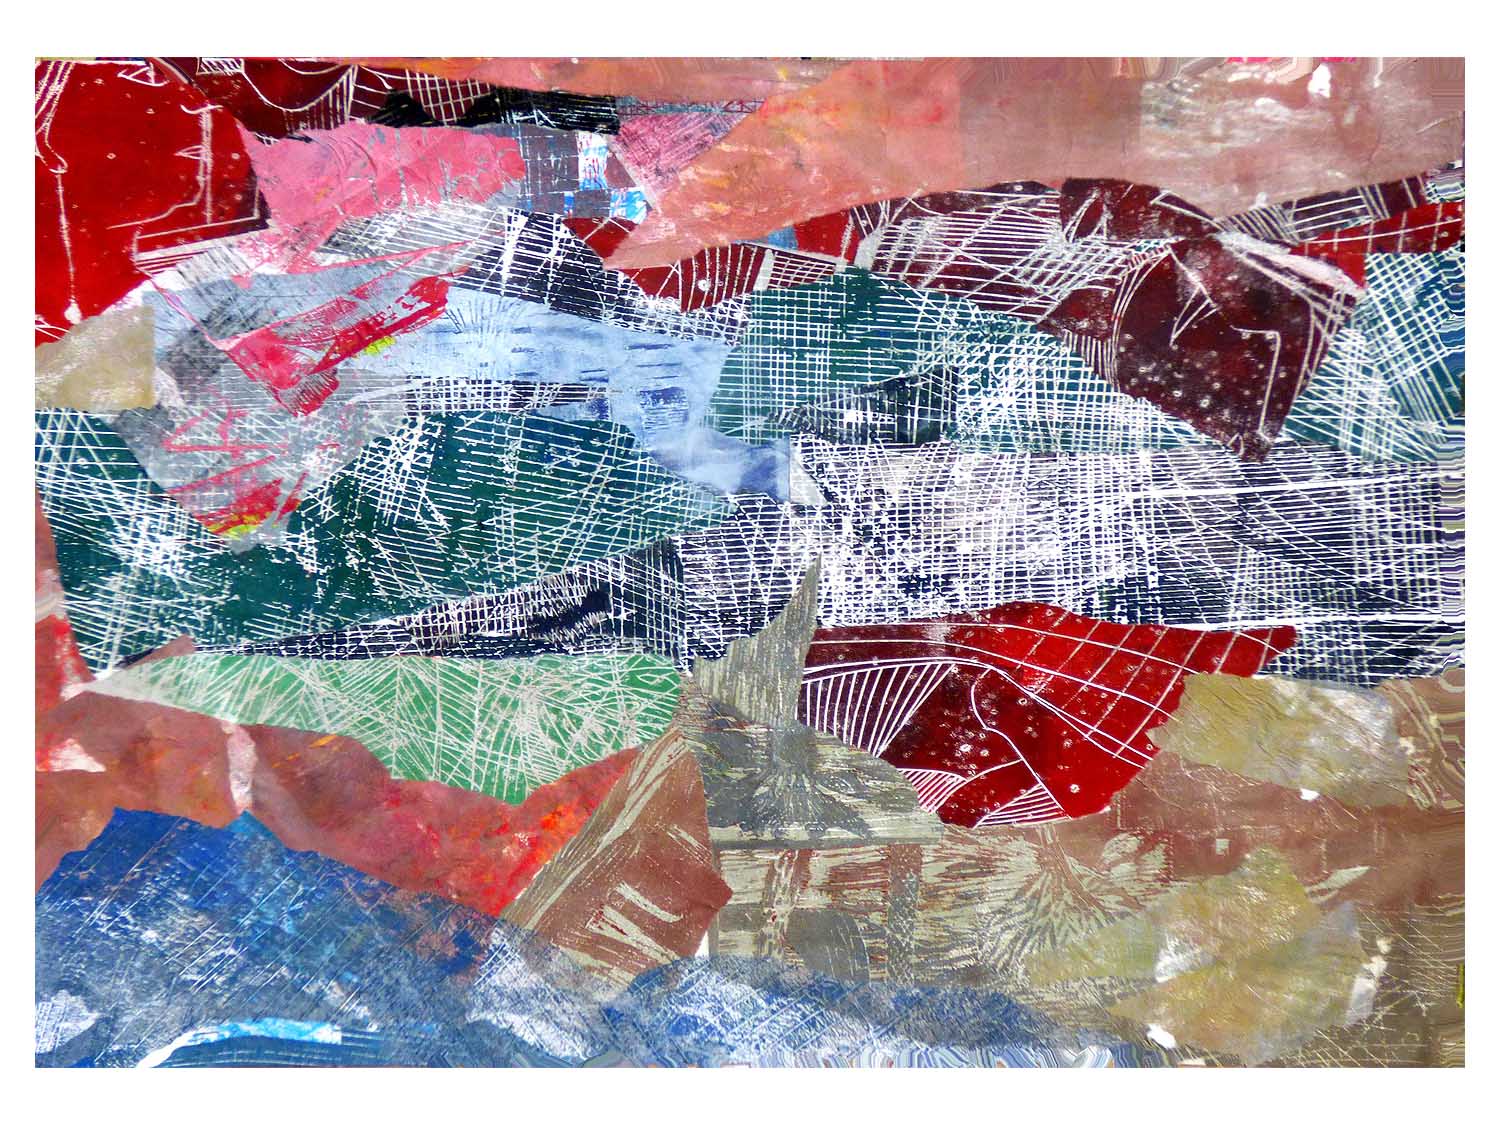 Cornelia Janecke Collagen-Landschaft 80x60 cm collgierte Seitenpapierdrucke 2019 